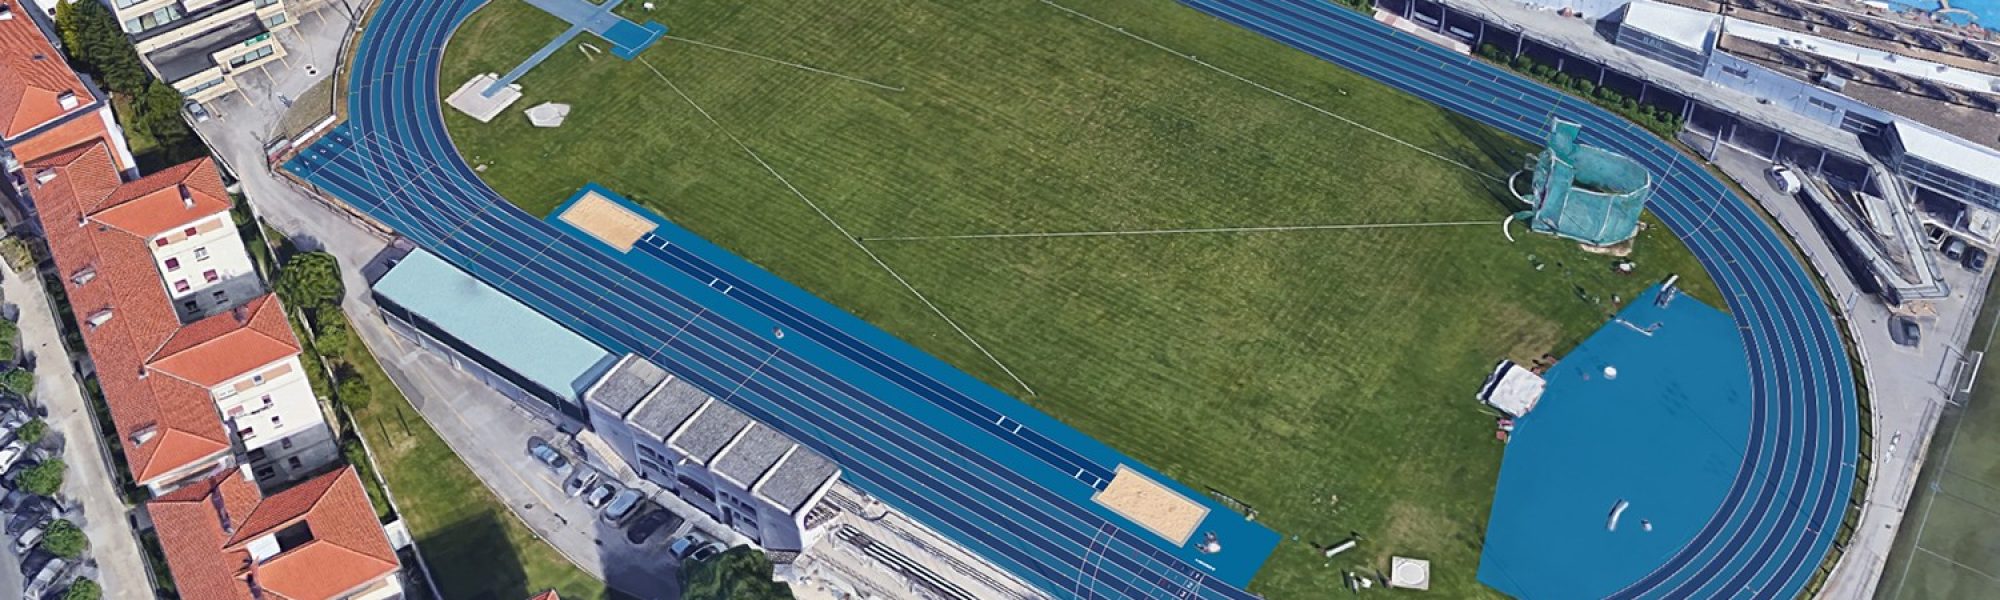 Fotomontaje de cómo quedará la pista de Larrabide tras la instalación de Sportflex Super X 720.